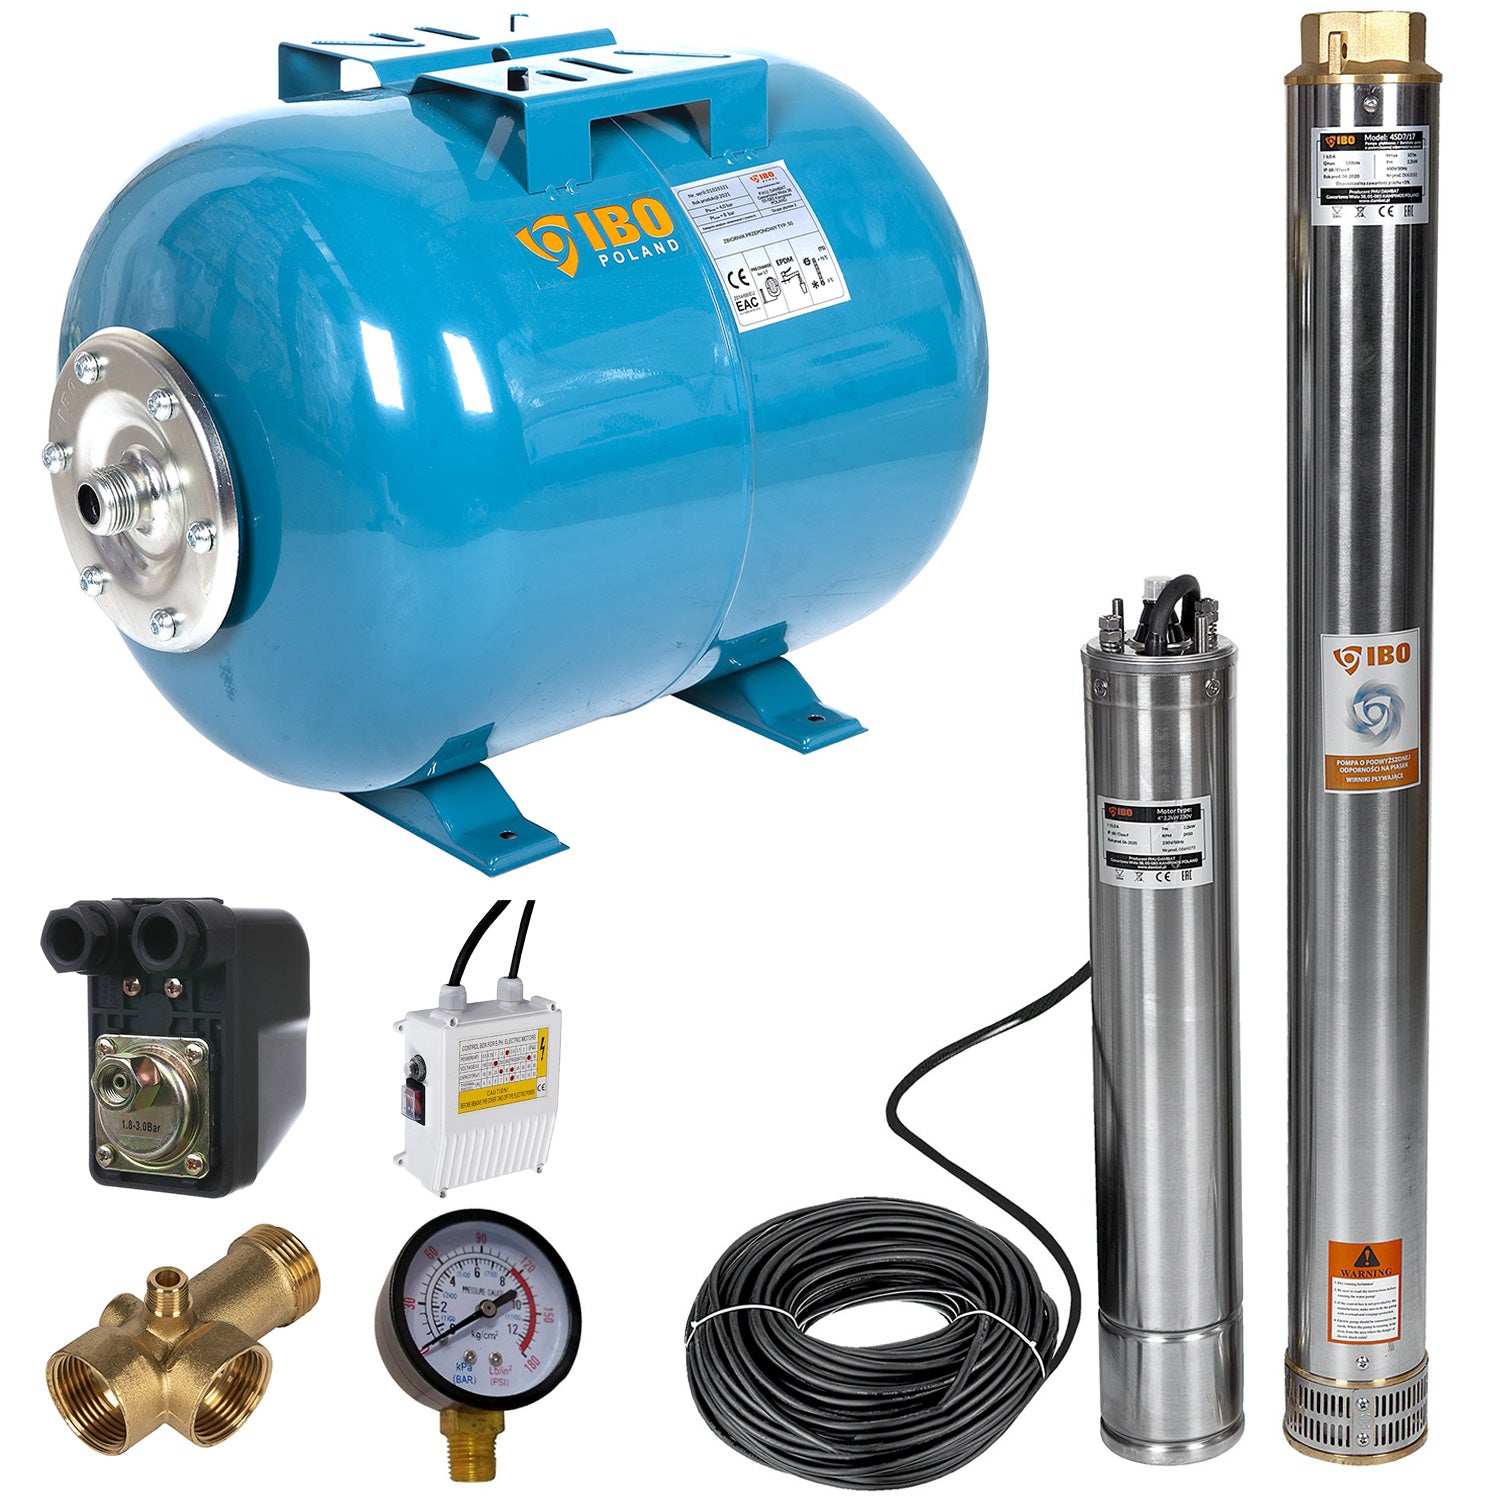 Kit hidrofor 24L cu pompa submersibila IBO Dambat 4SDM7/17, 2.2kW, debit 180l/min, H refulare 107m, racord 2 toli, rezistenta la nisip